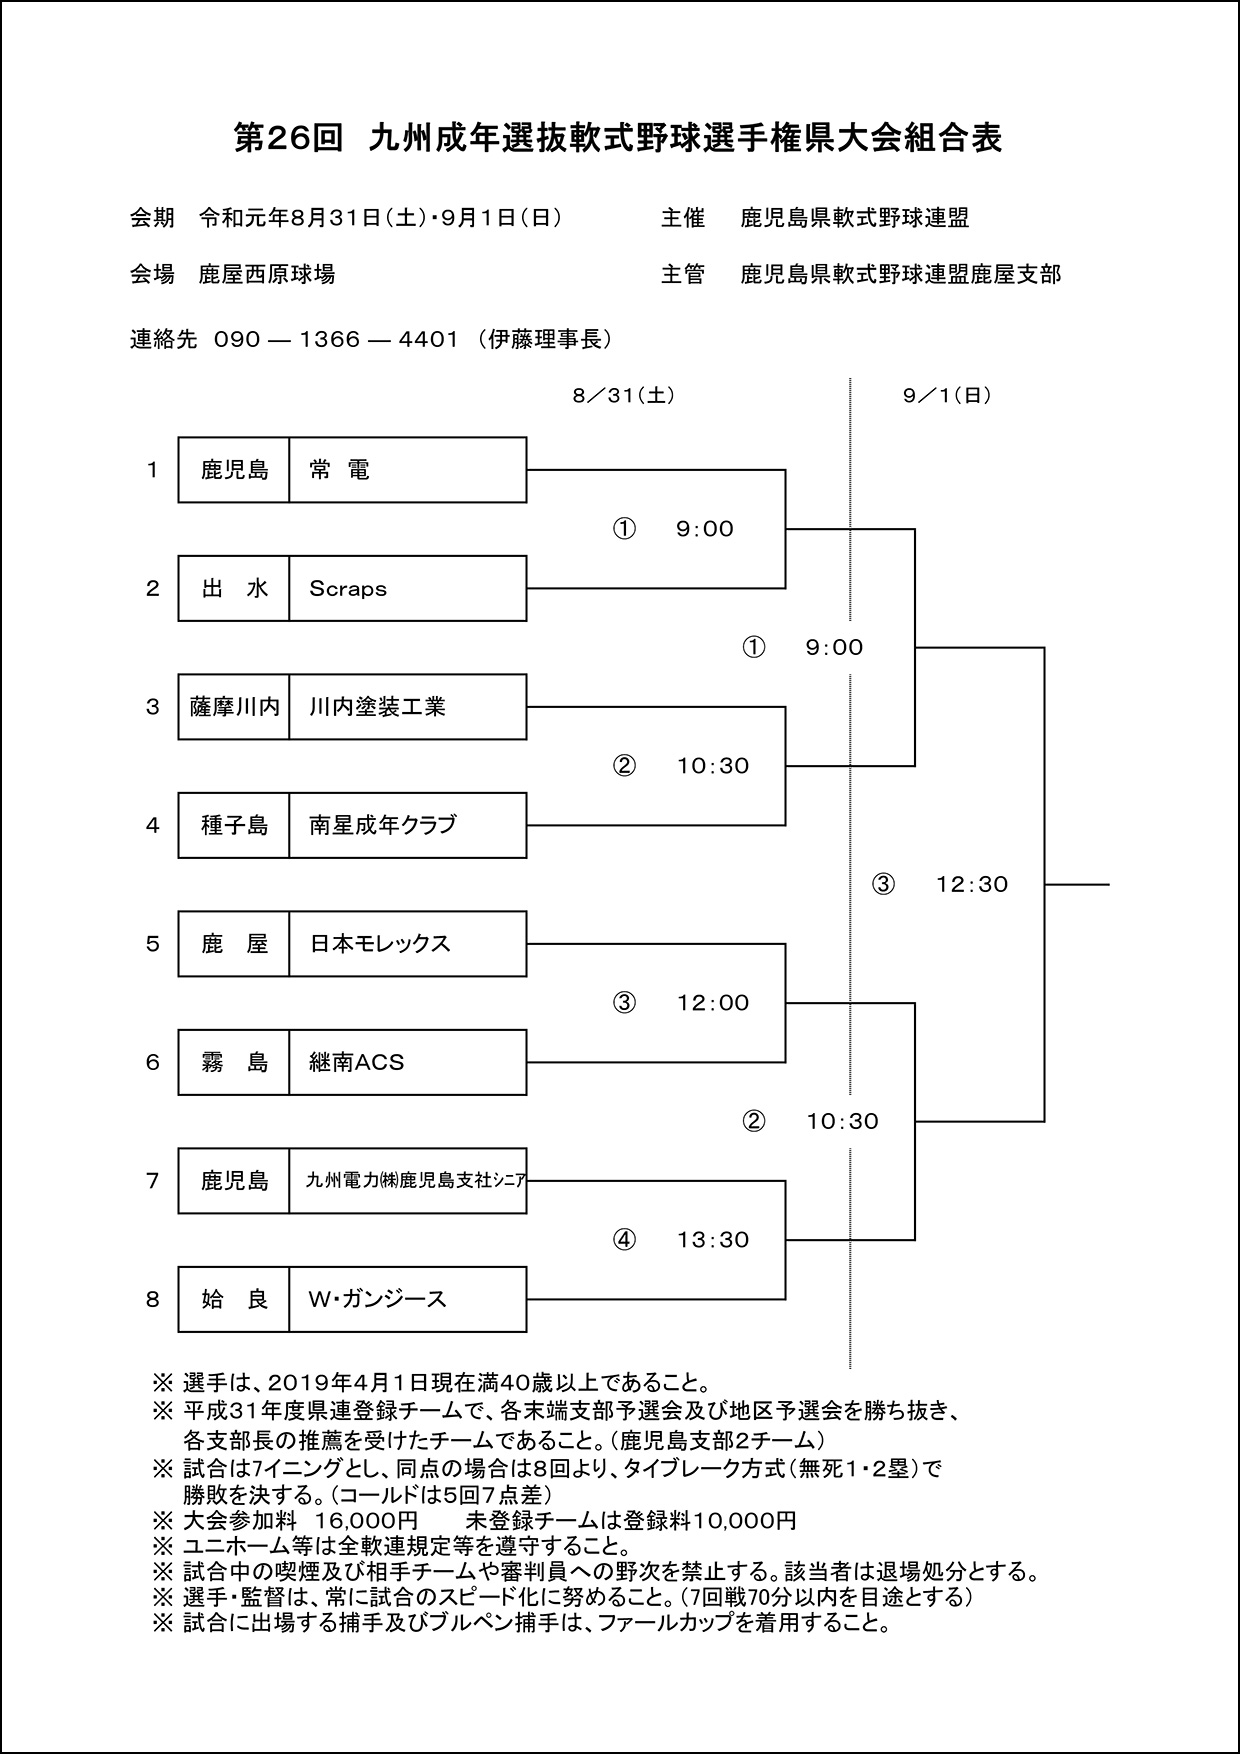 【組合せ表】九州地区成年県大会